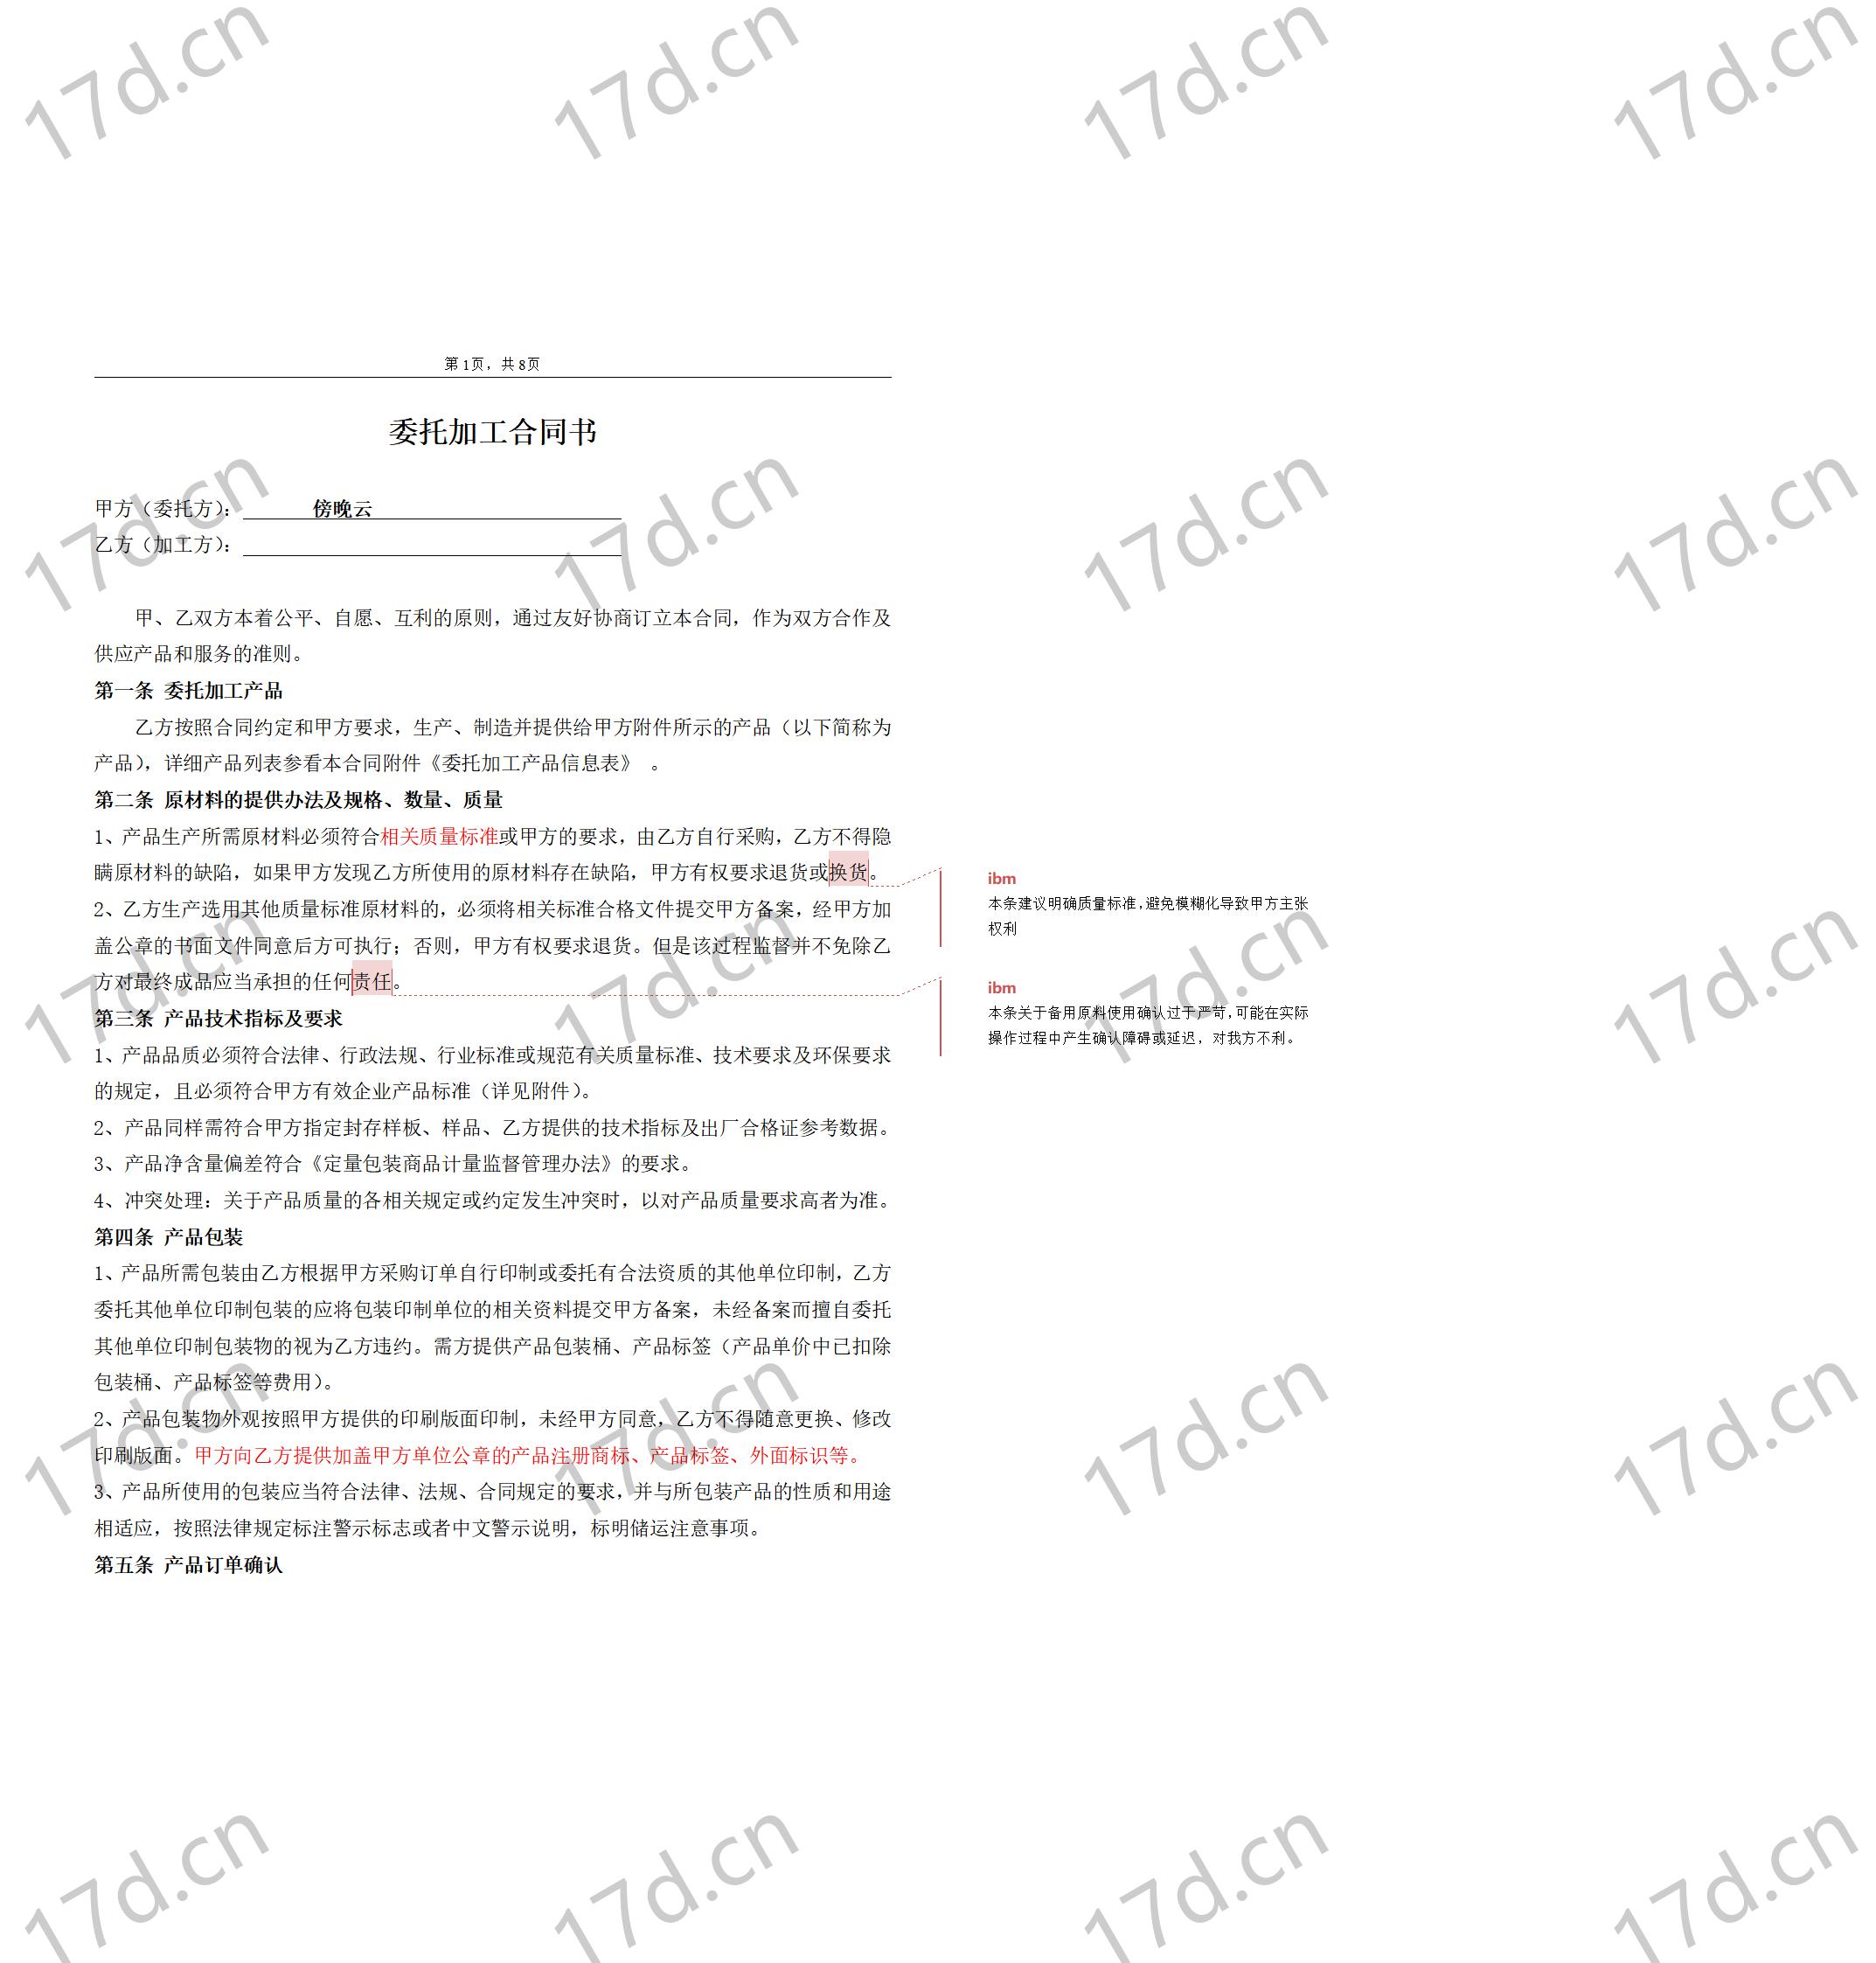 委托加工合同(OEM)2014-我方委托供应商生产加工_01.jpg